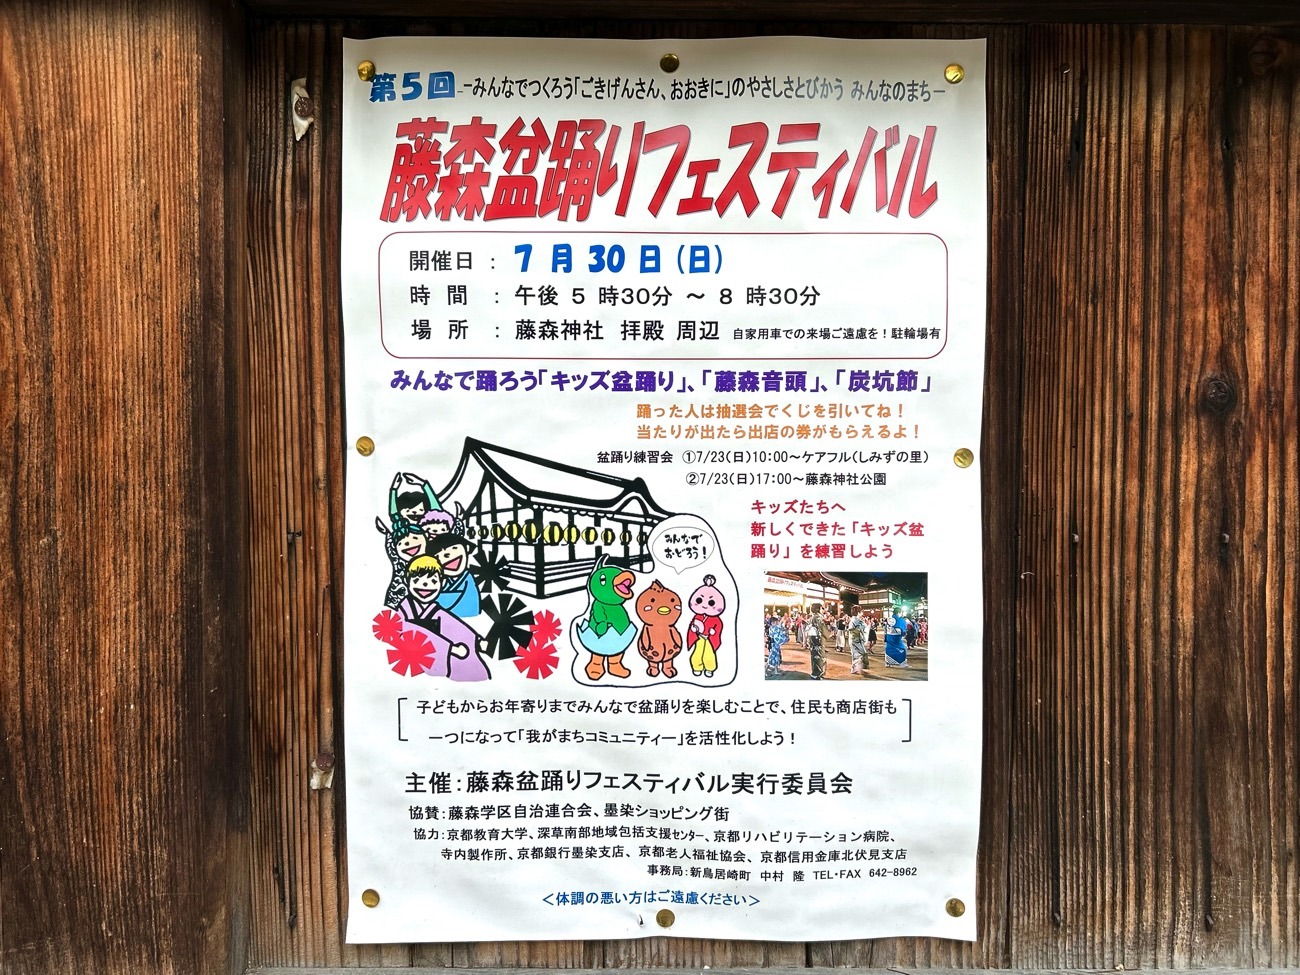 「第5回 藤森盆踊りフェスティバル」のポスター